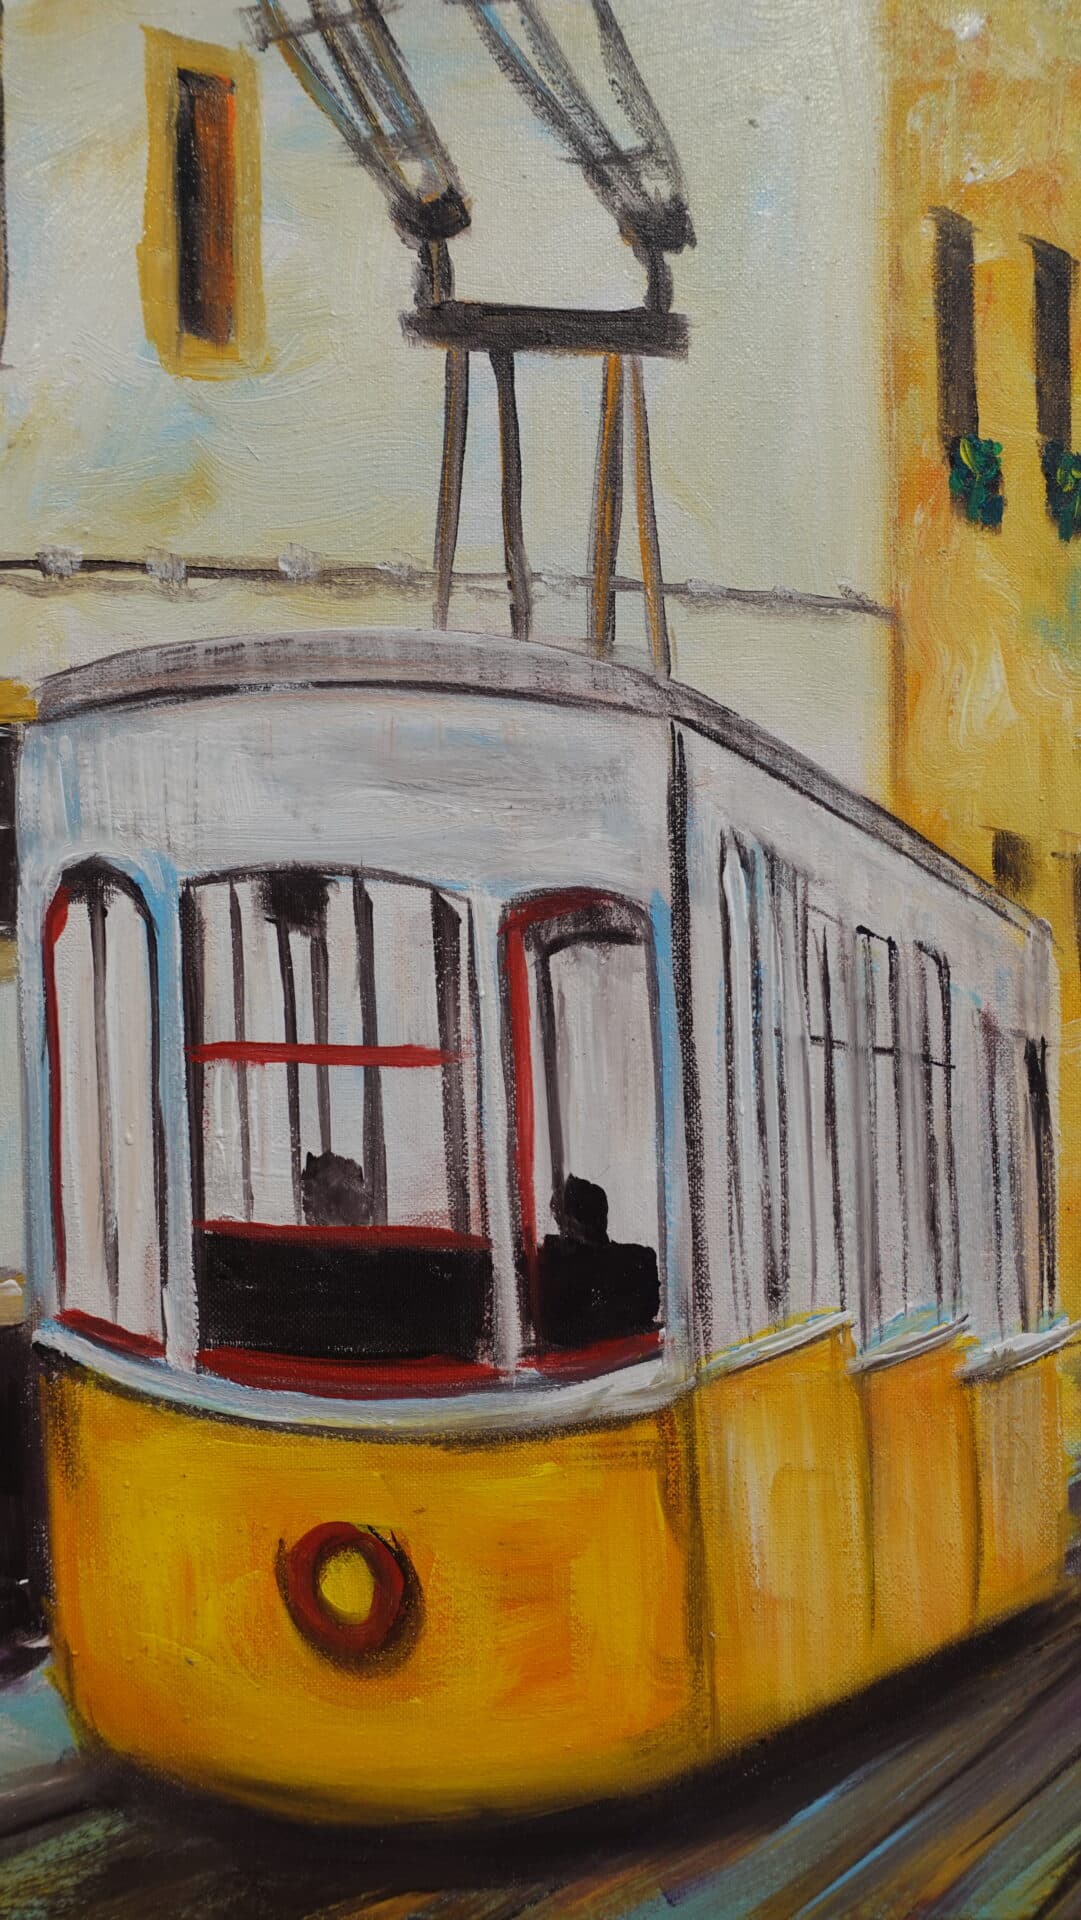 Tram in Lisbon 60 x 40 cm